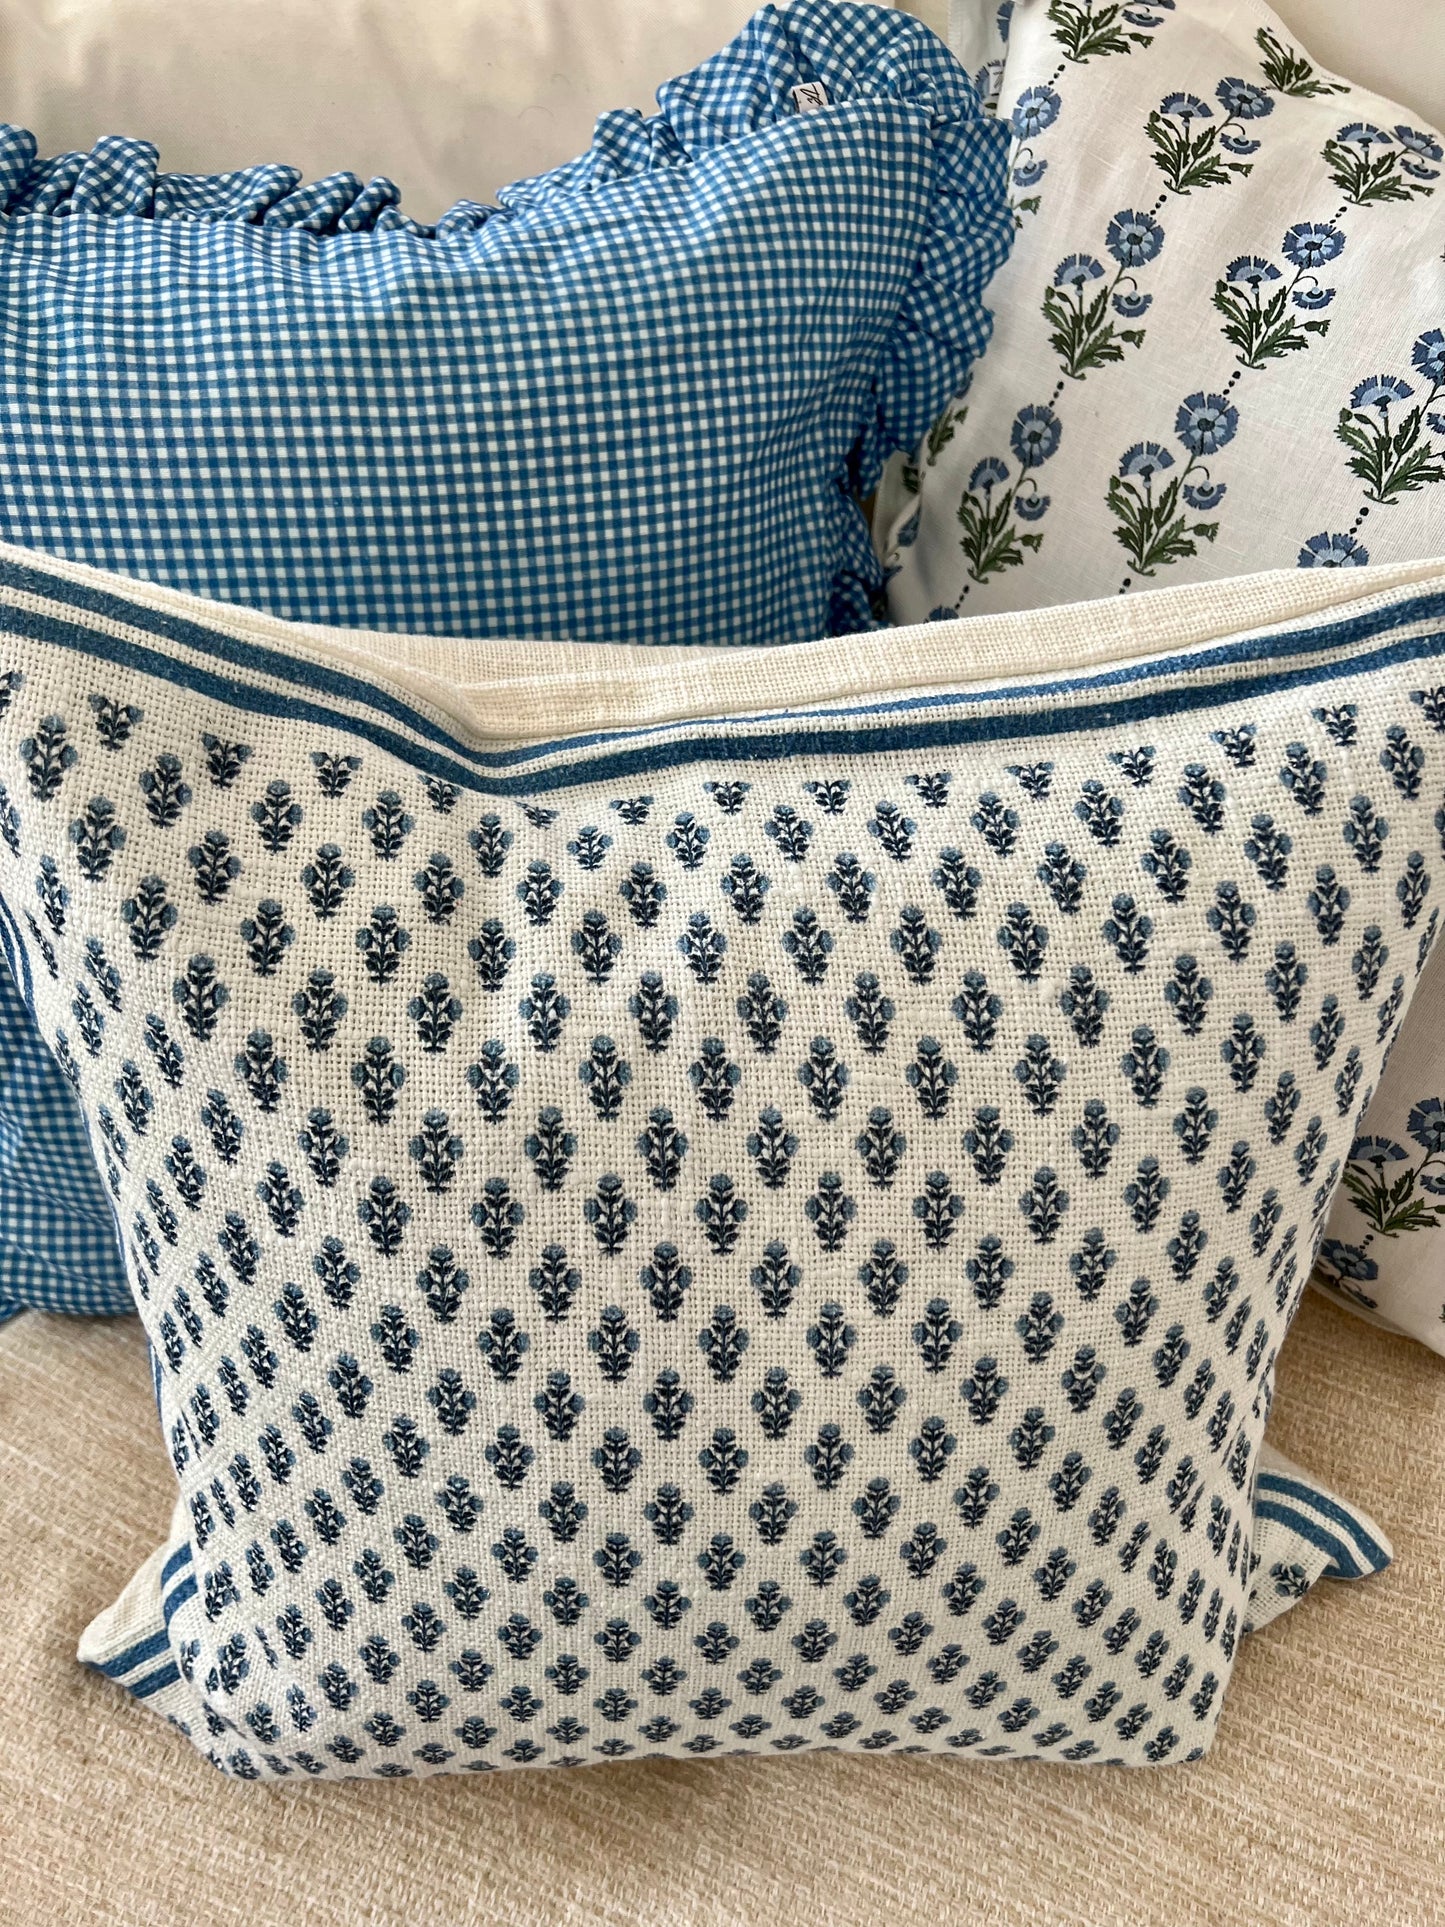 Celeste Mughal Flower Pillow Cover in Blue